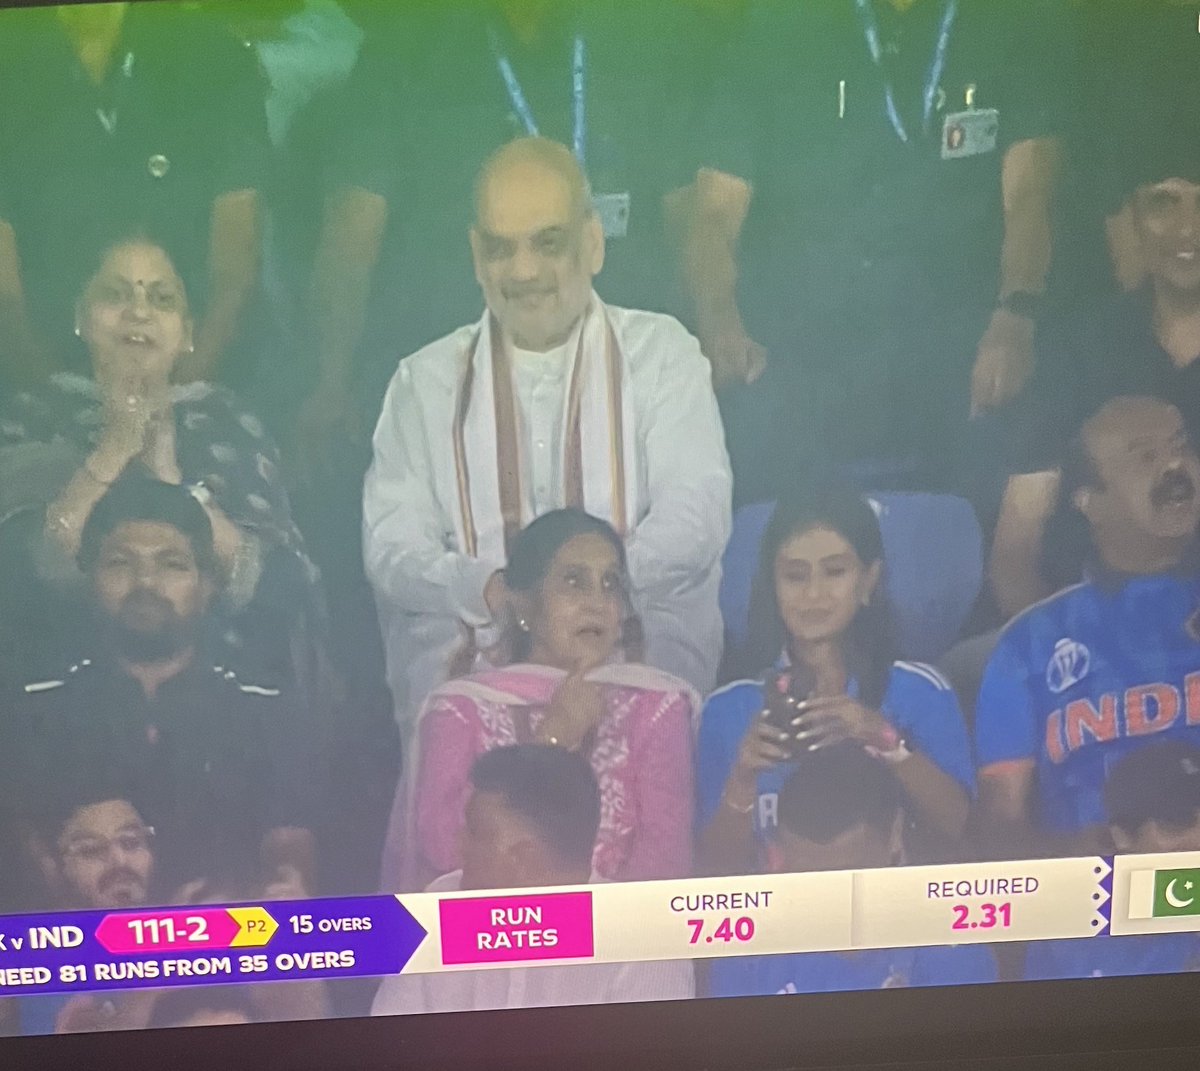 बीजेपी अपने स्वयं के आईटी सेल की तरह ट्रोल करती है जैसे कोई और नहीं करता, फिर से हुआ। 🤣 बीजेपी समर्थक भारतीय वी पैकिस्तान मैच के लिए #BoyCottIandopakMatch और #shameonbcci ट्रेंडिंग कर रहे थे। और अब मोटा भाई अमित शाह मैच देखने के लिए नरेंद्र मोदी स्टेडियम पहुंची। बीसीसीआई